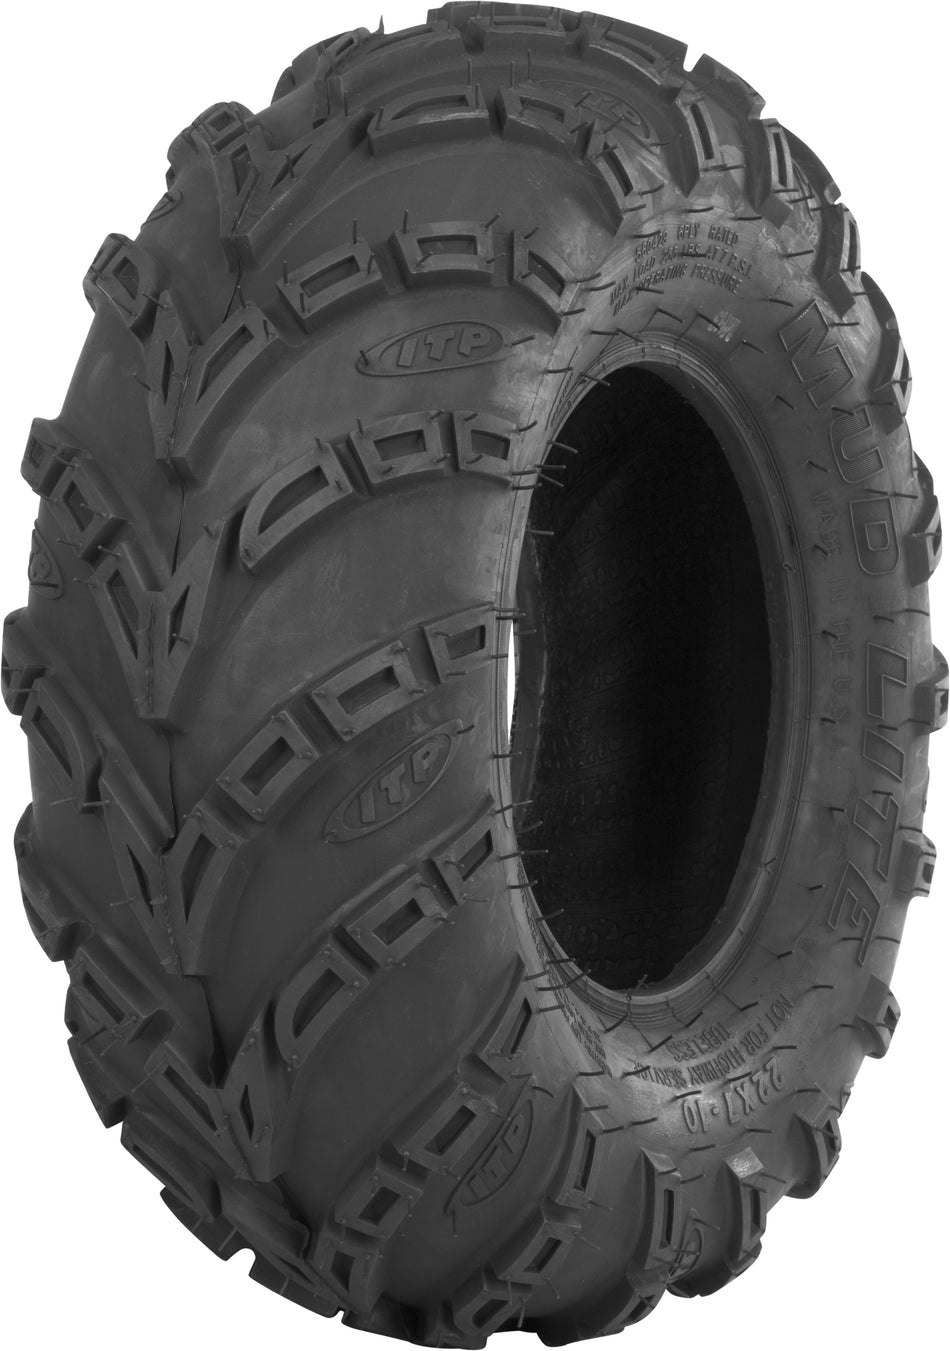 ITP Tire Mud Lite Xxl F/R 30x10-14 Lr-550lbs Bias 560462